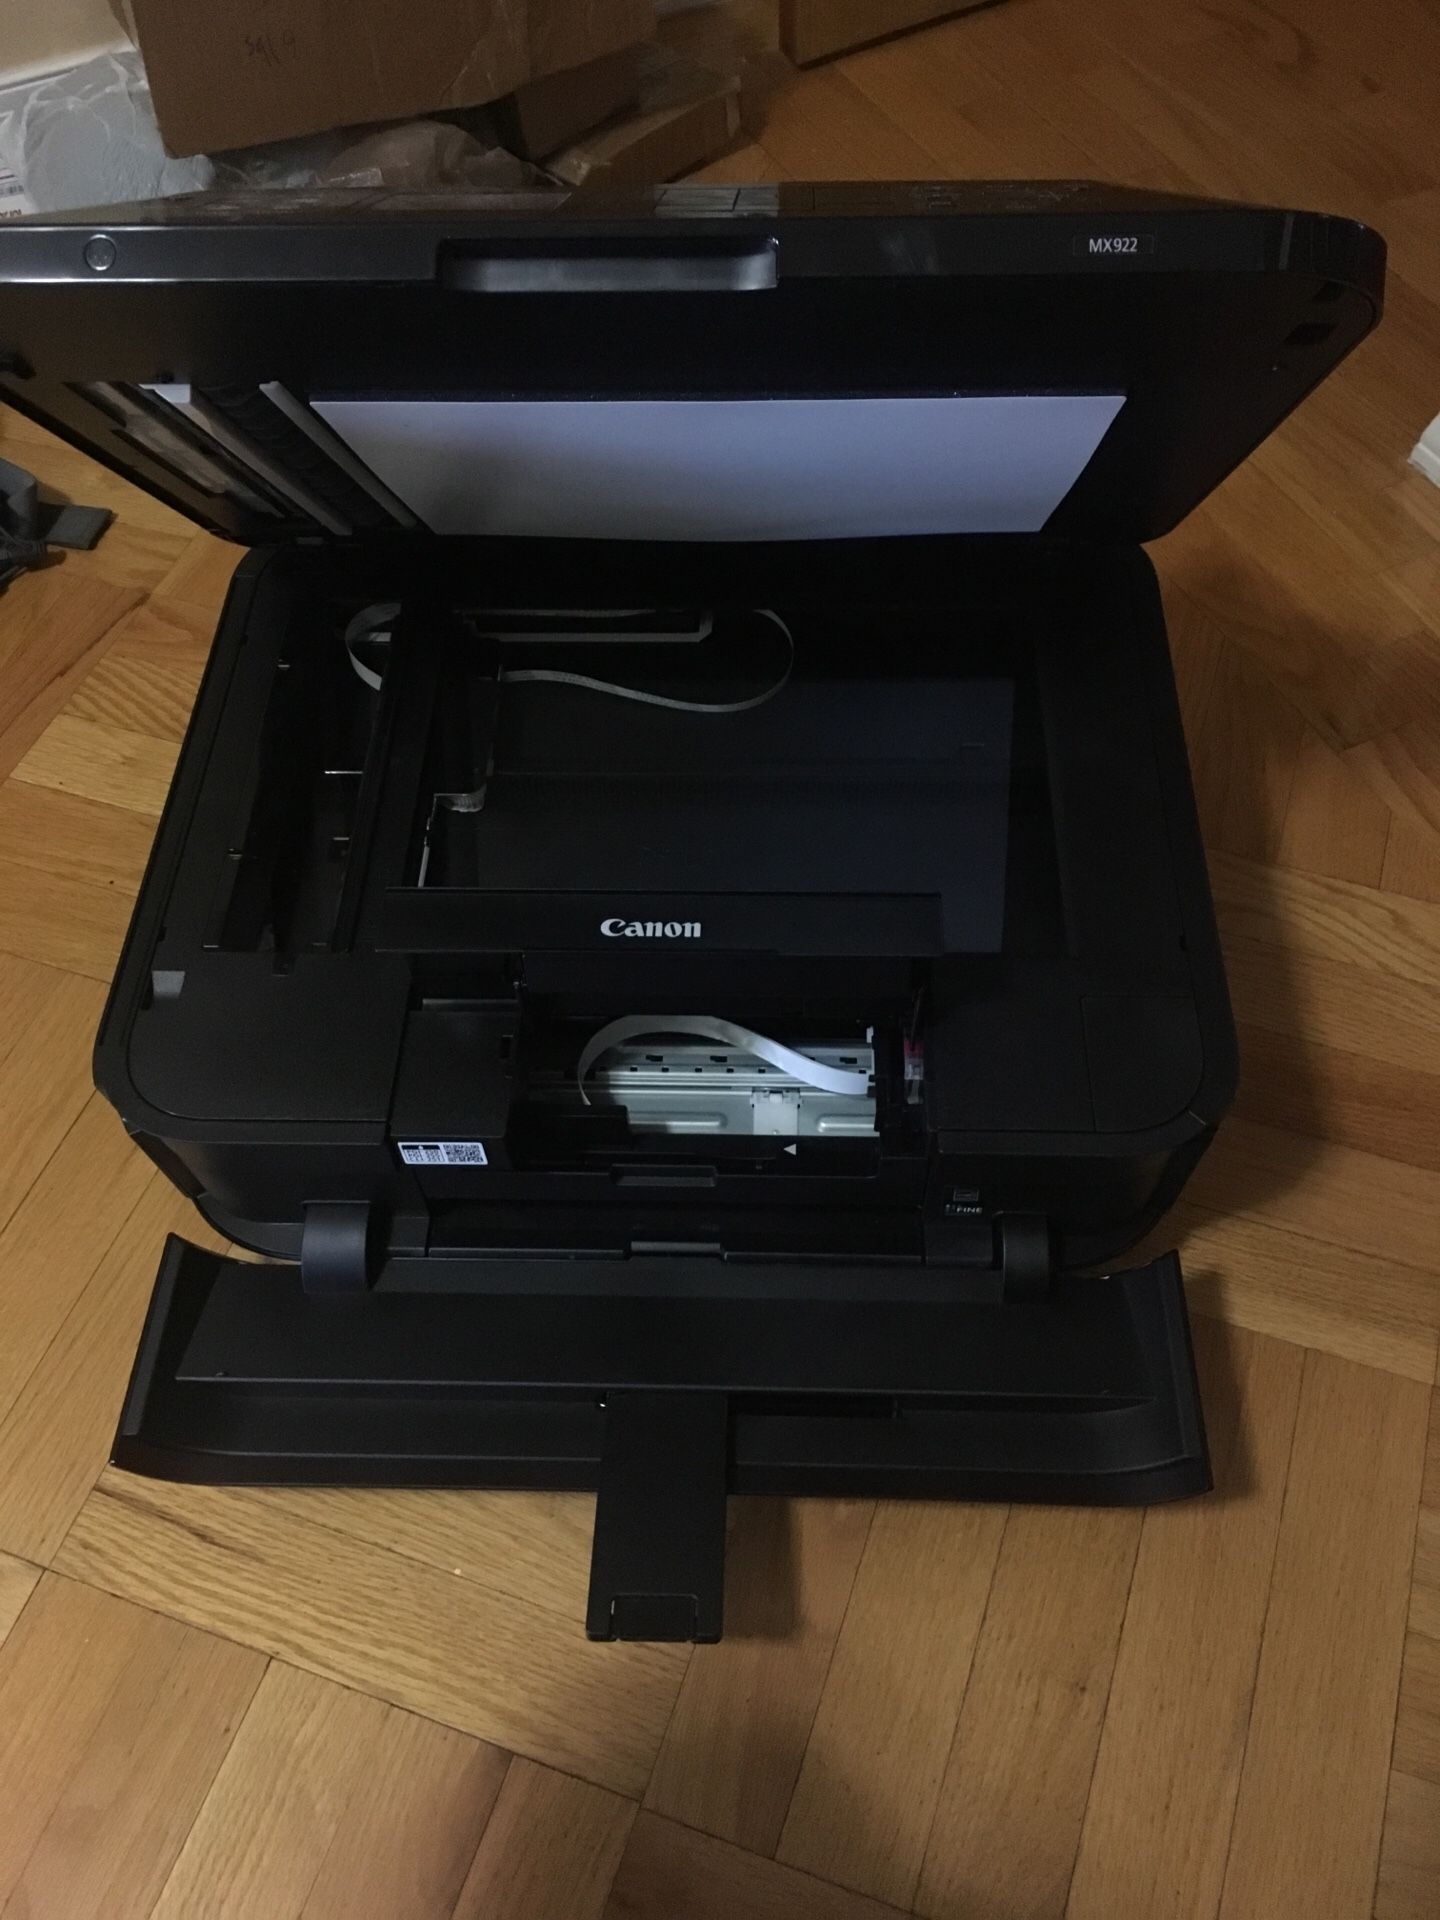 Canon Pixma Mx922 printer